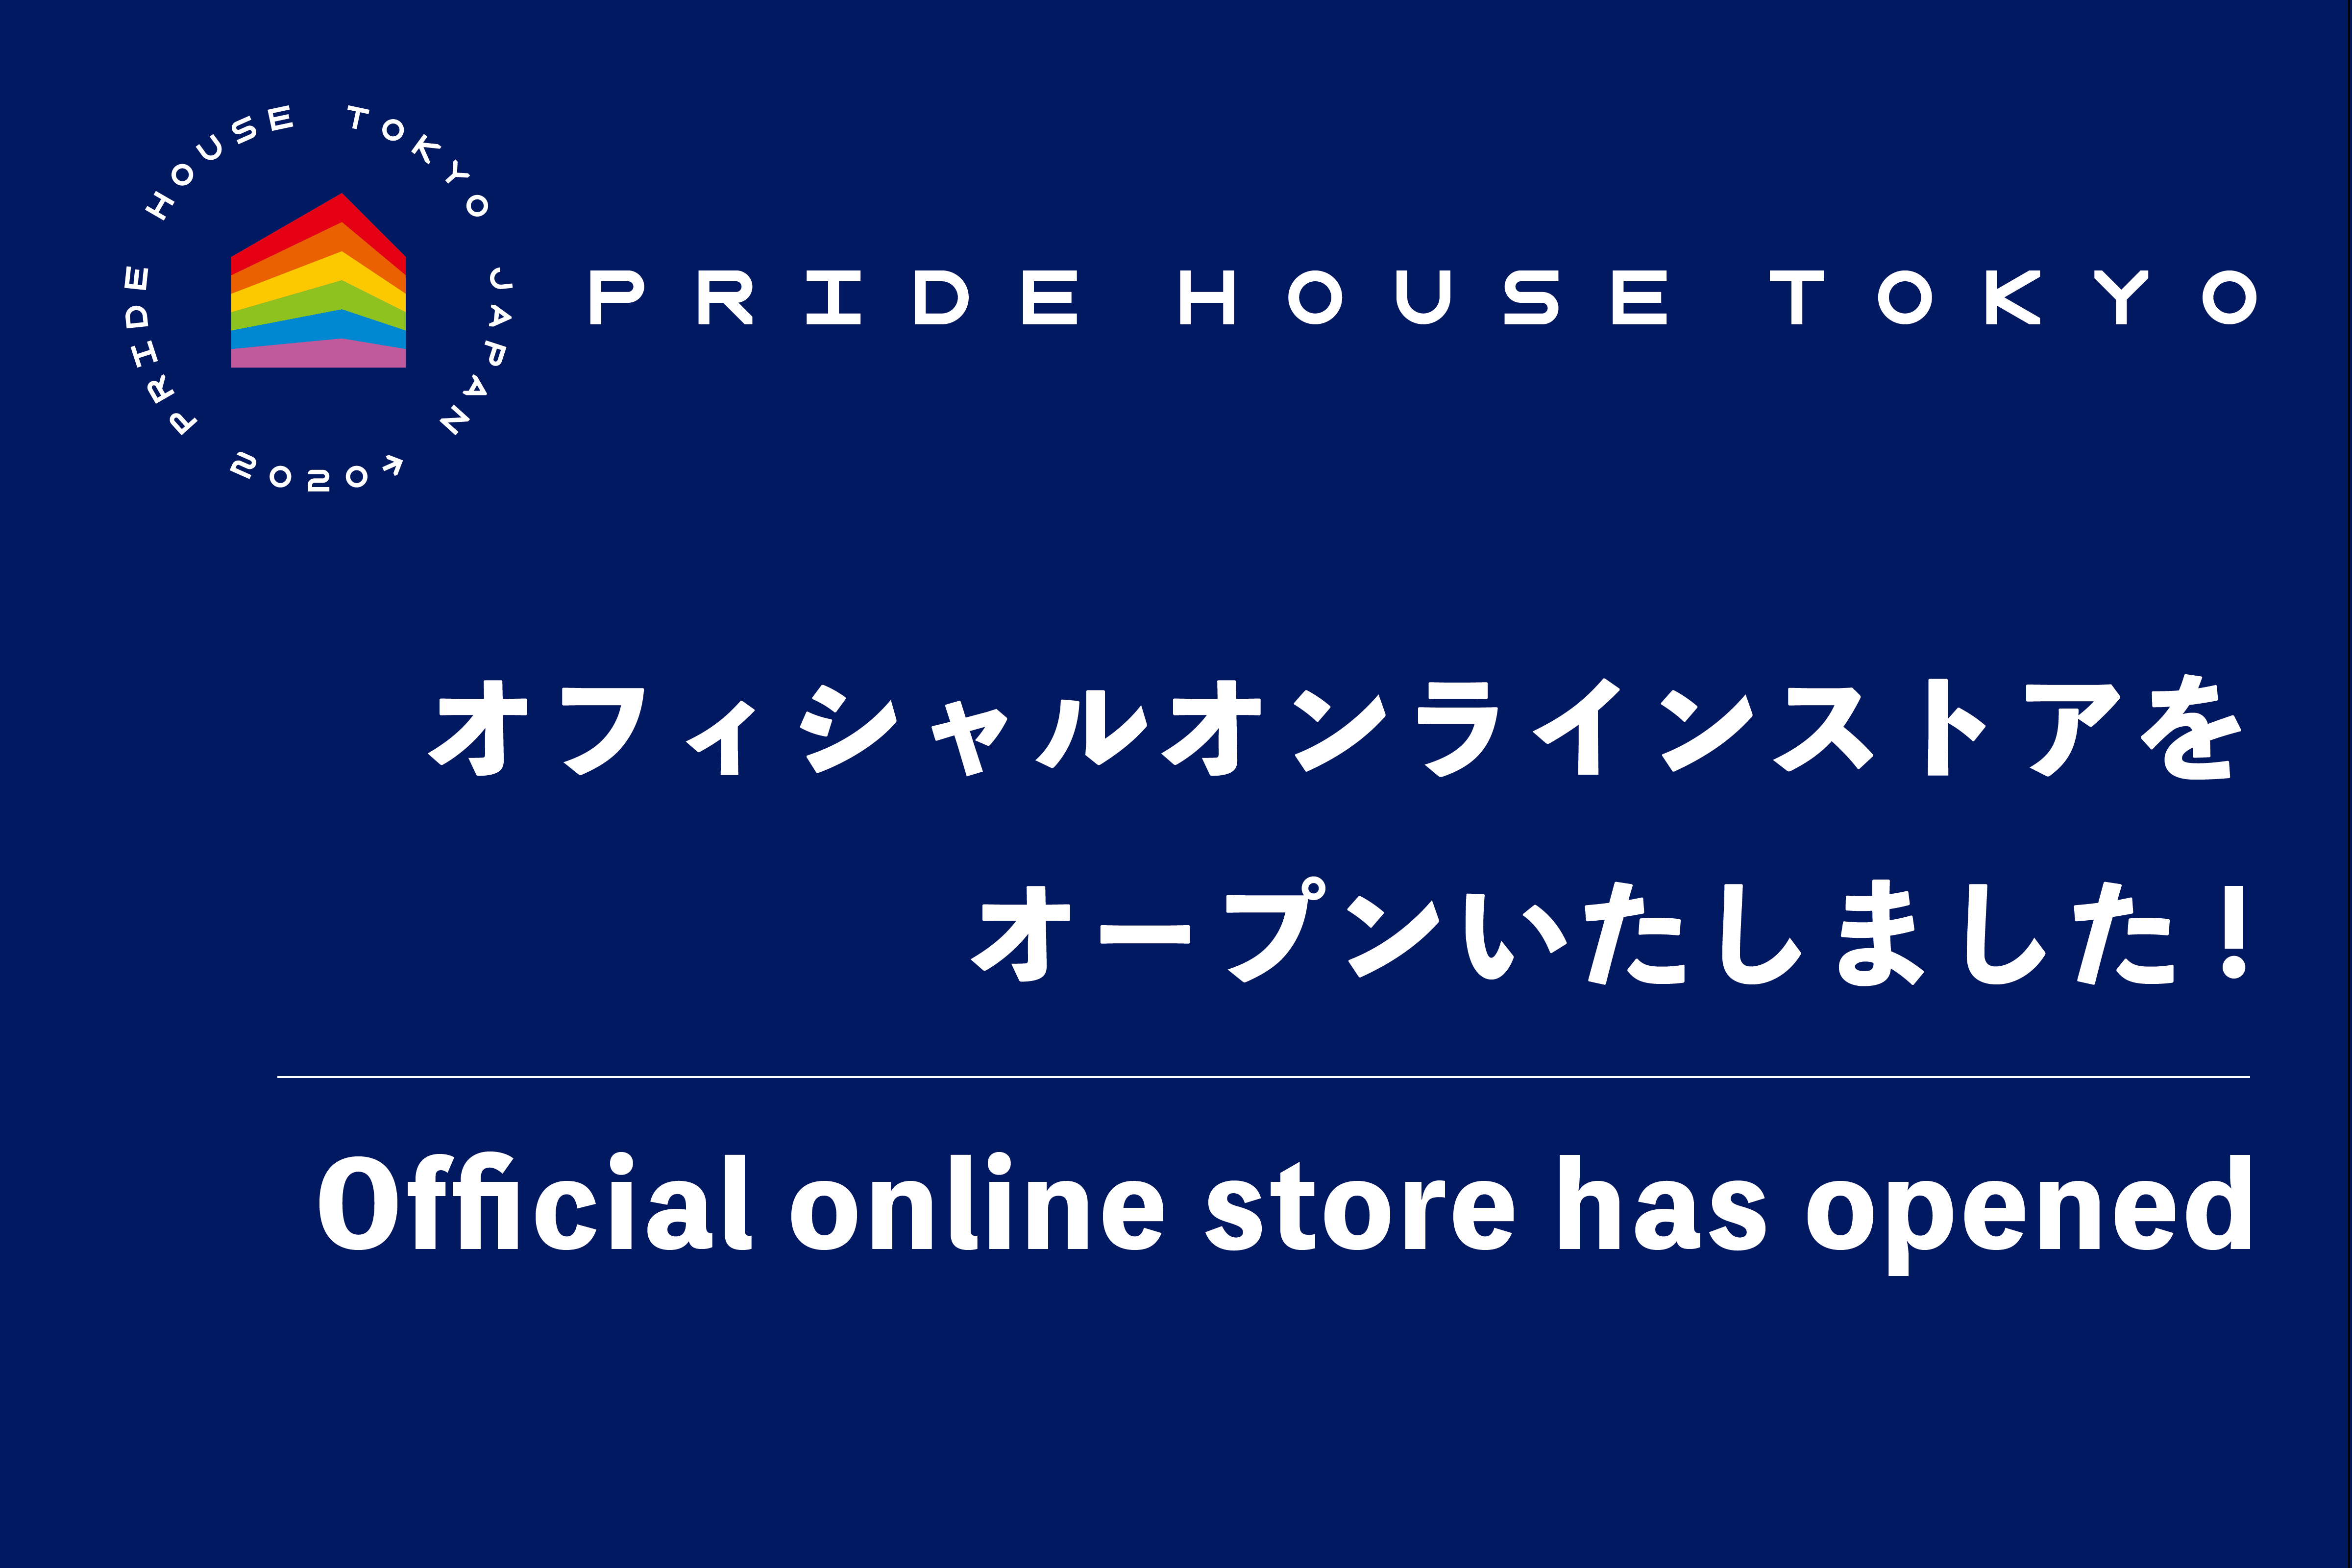 プライドハウス東京オフィシャル・オンラインストアを開設しました。